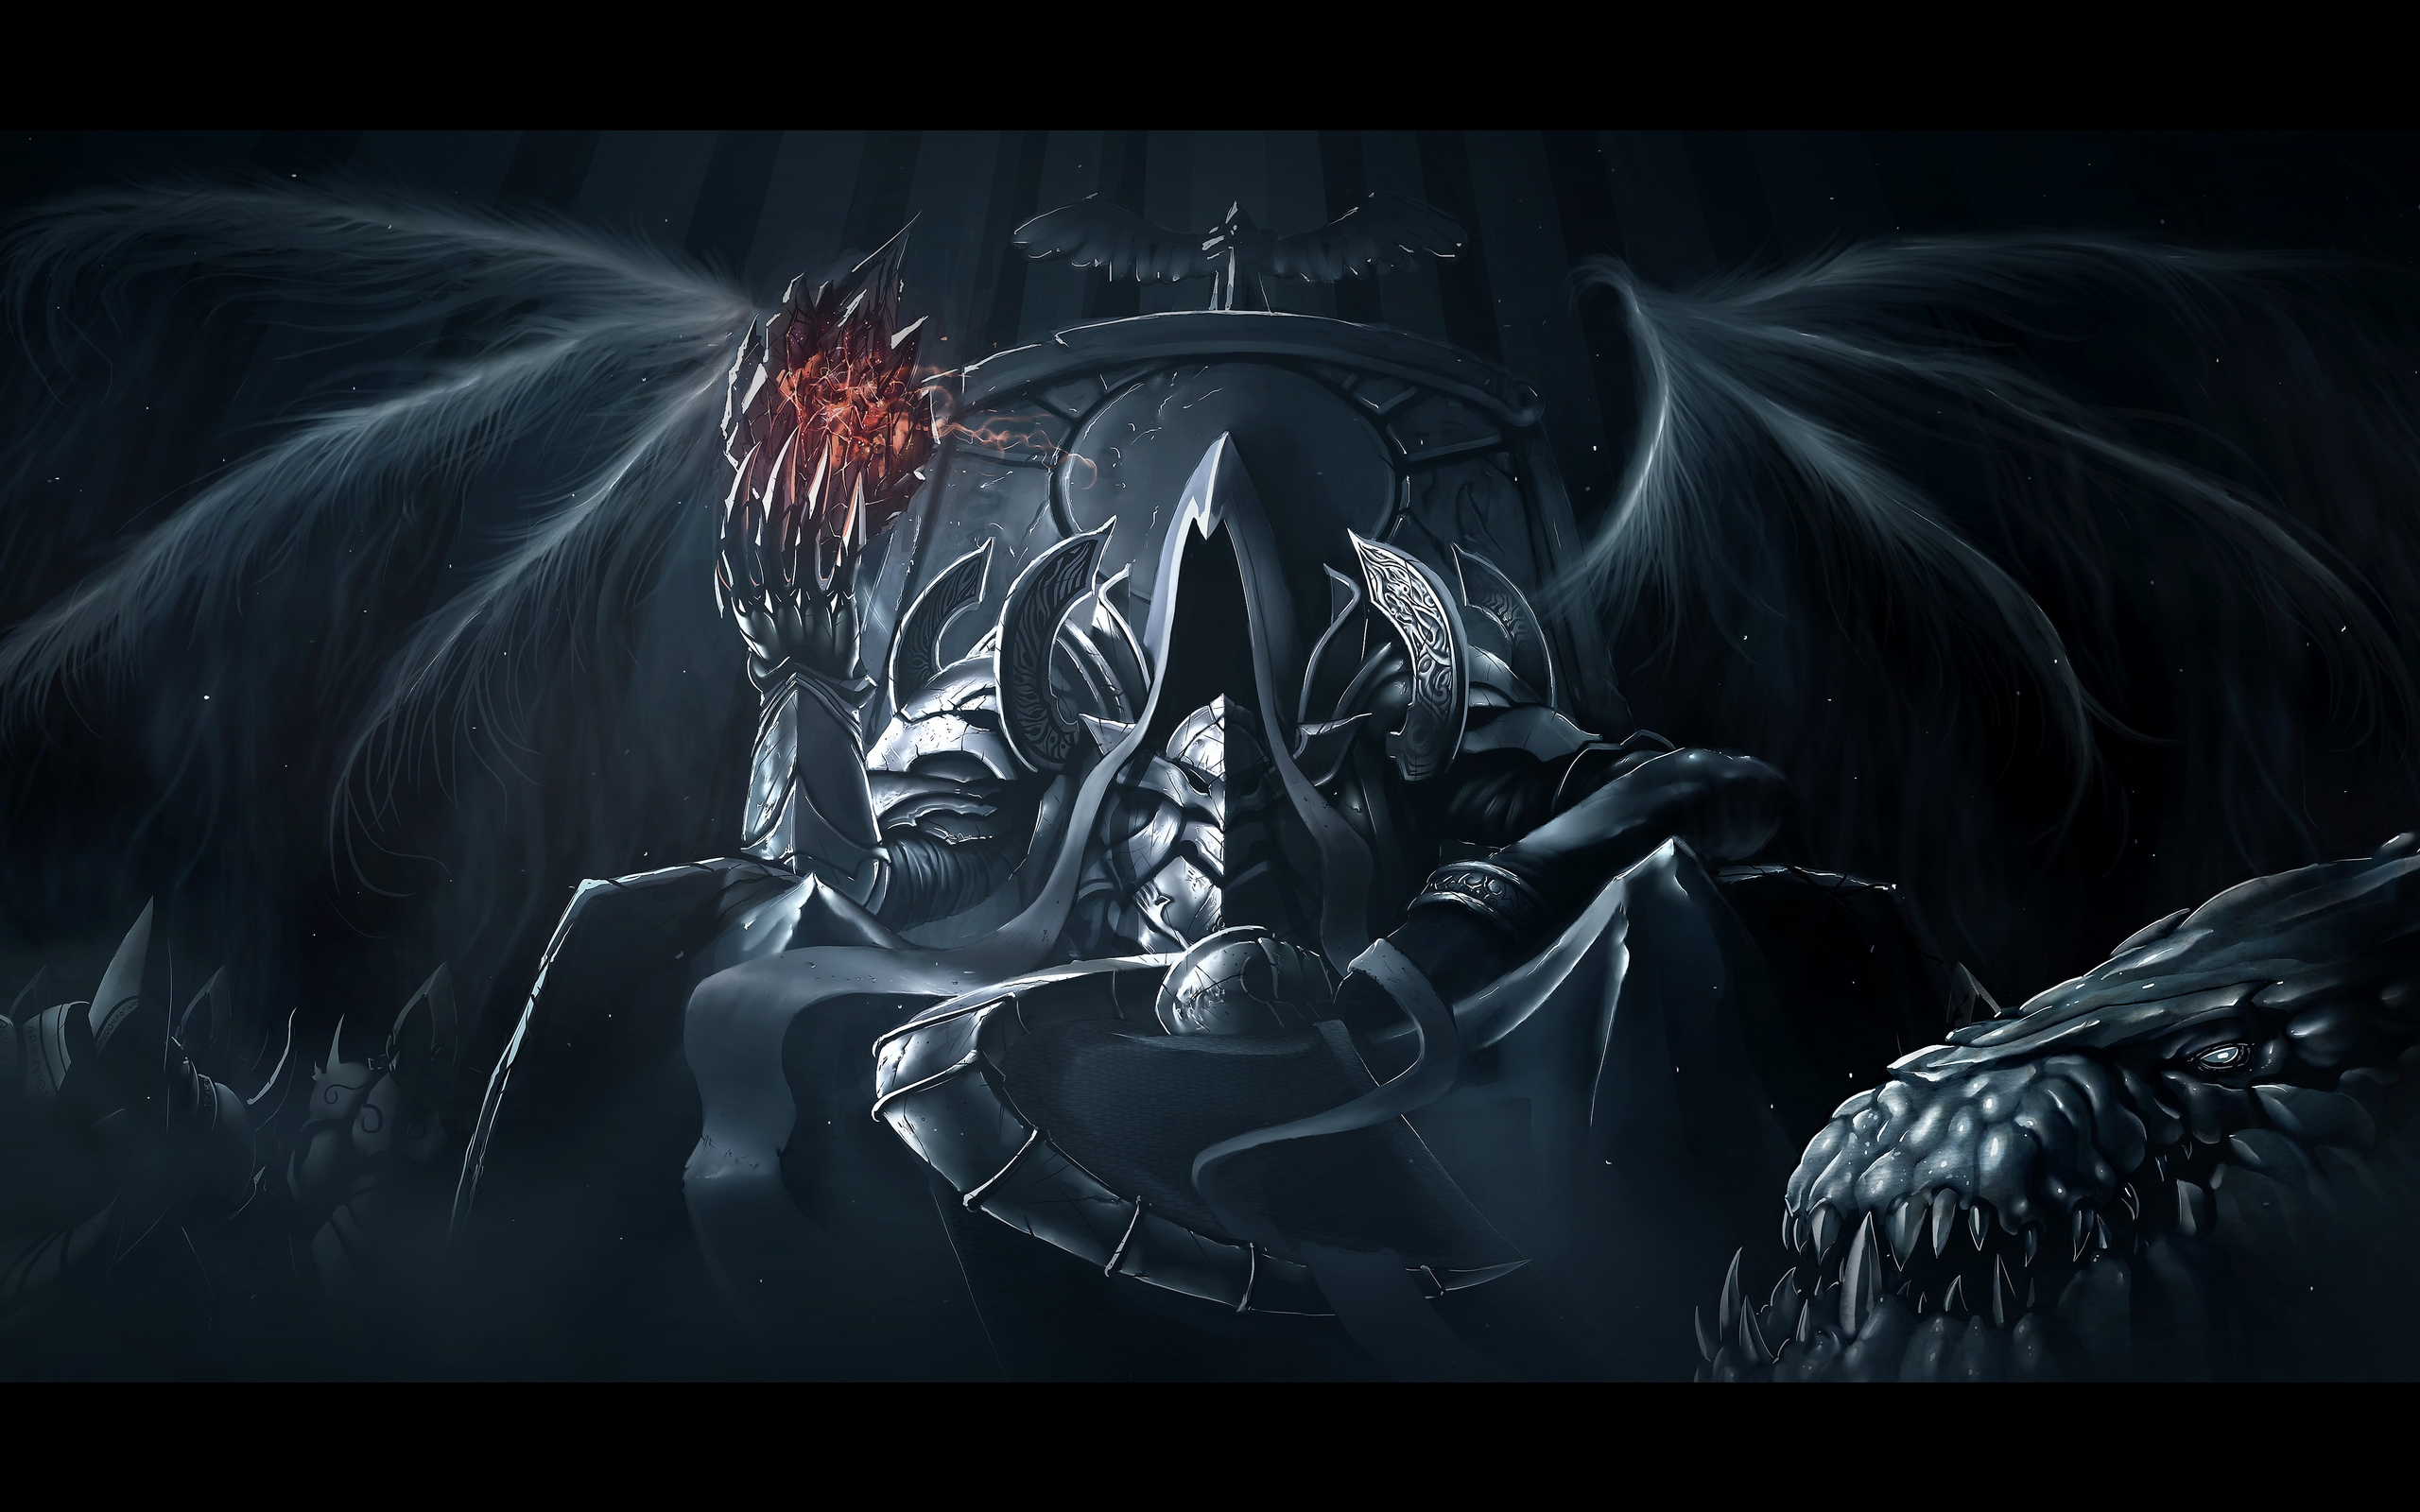 Diablo III: Reaper Of Souls Wallpapers, Pictures, Images